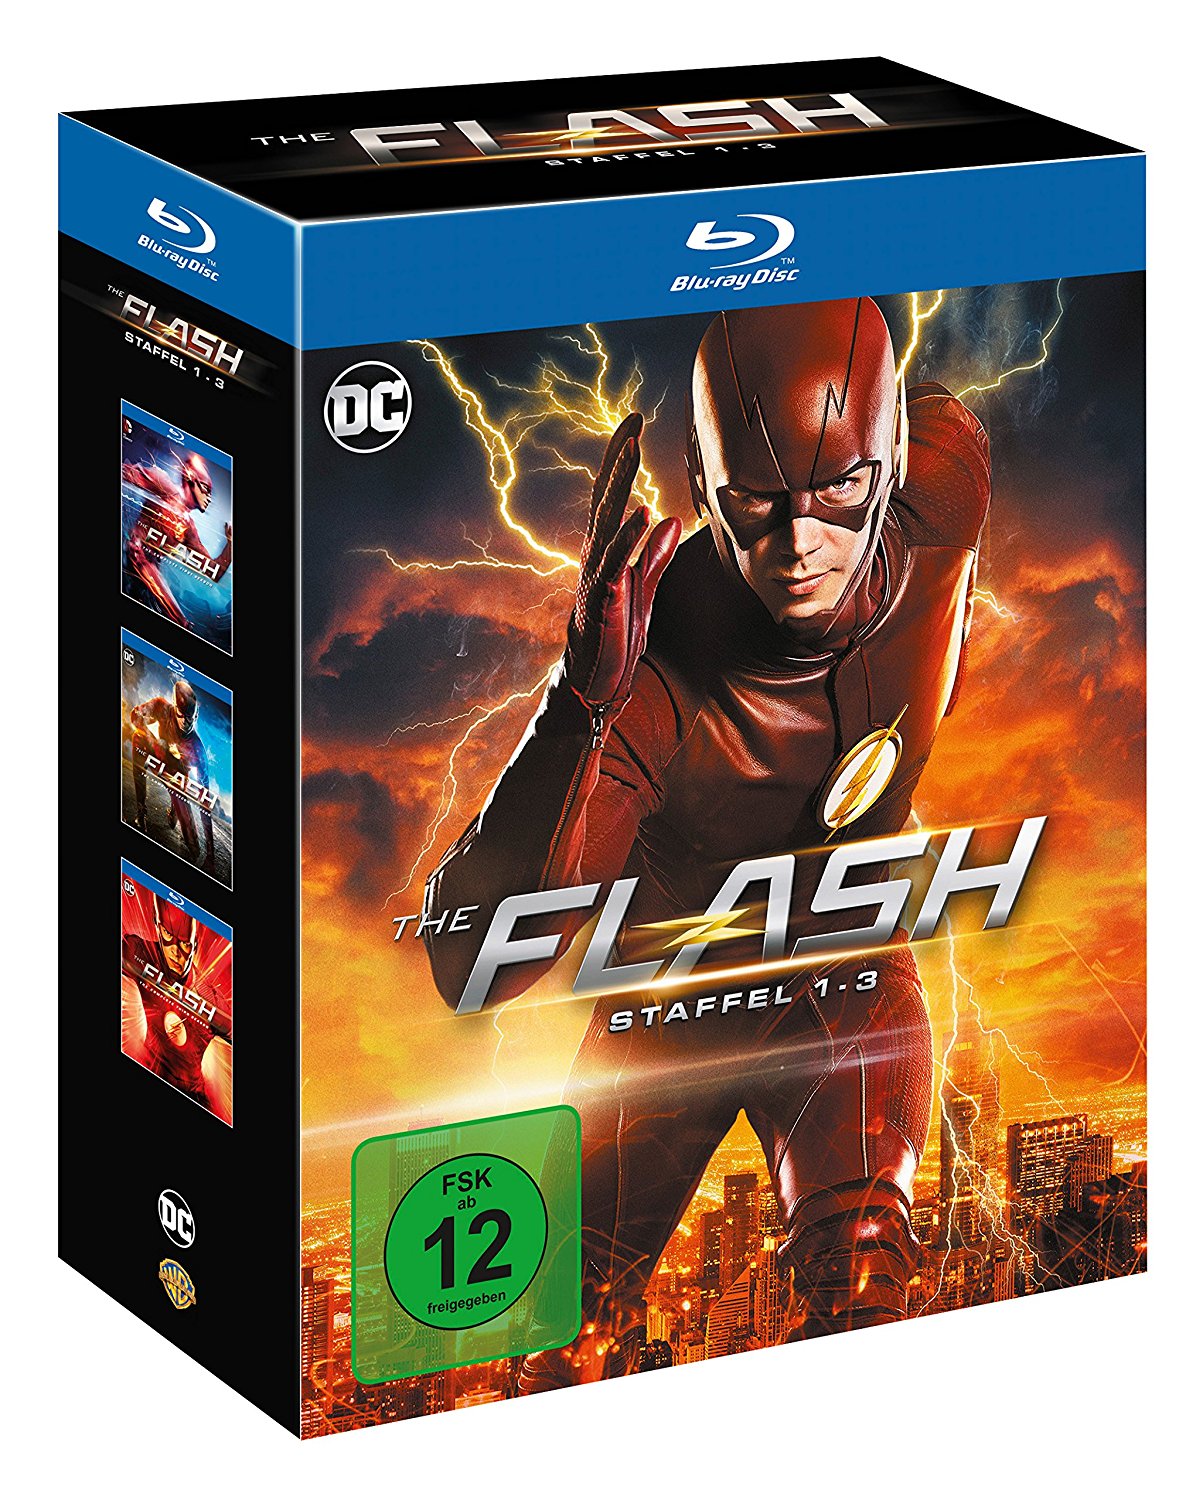 The-Flash-Blu-ray